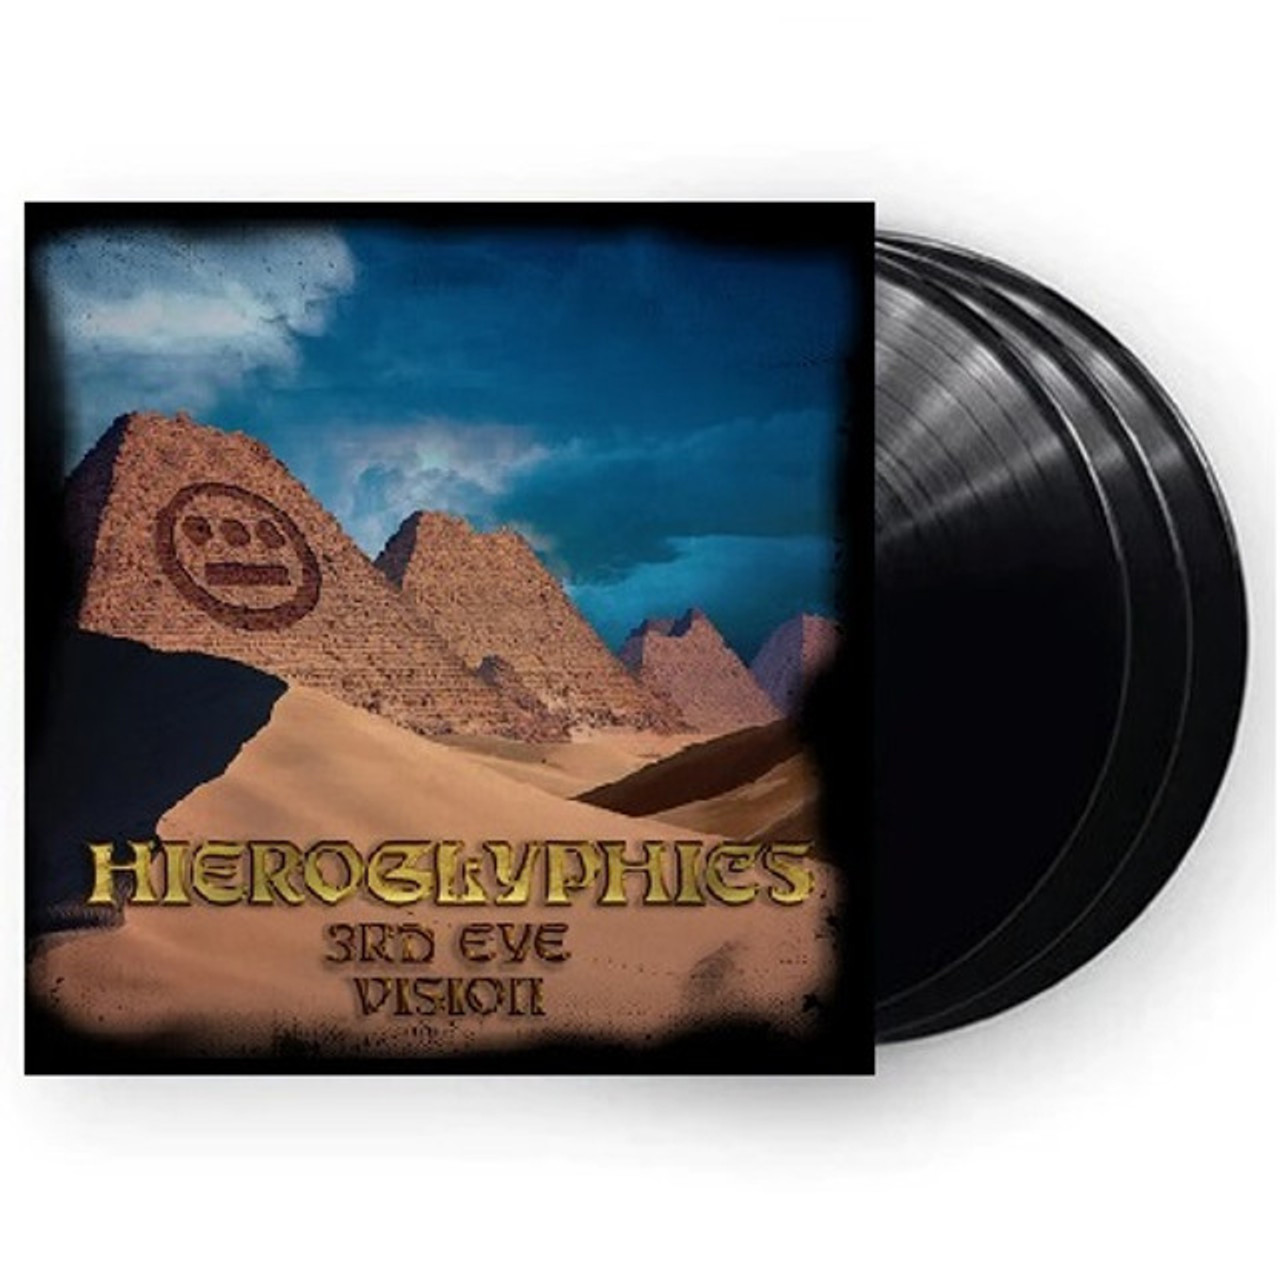 Hieroglyphics - 3rd Eye Vision 3x Vinyl Record Set